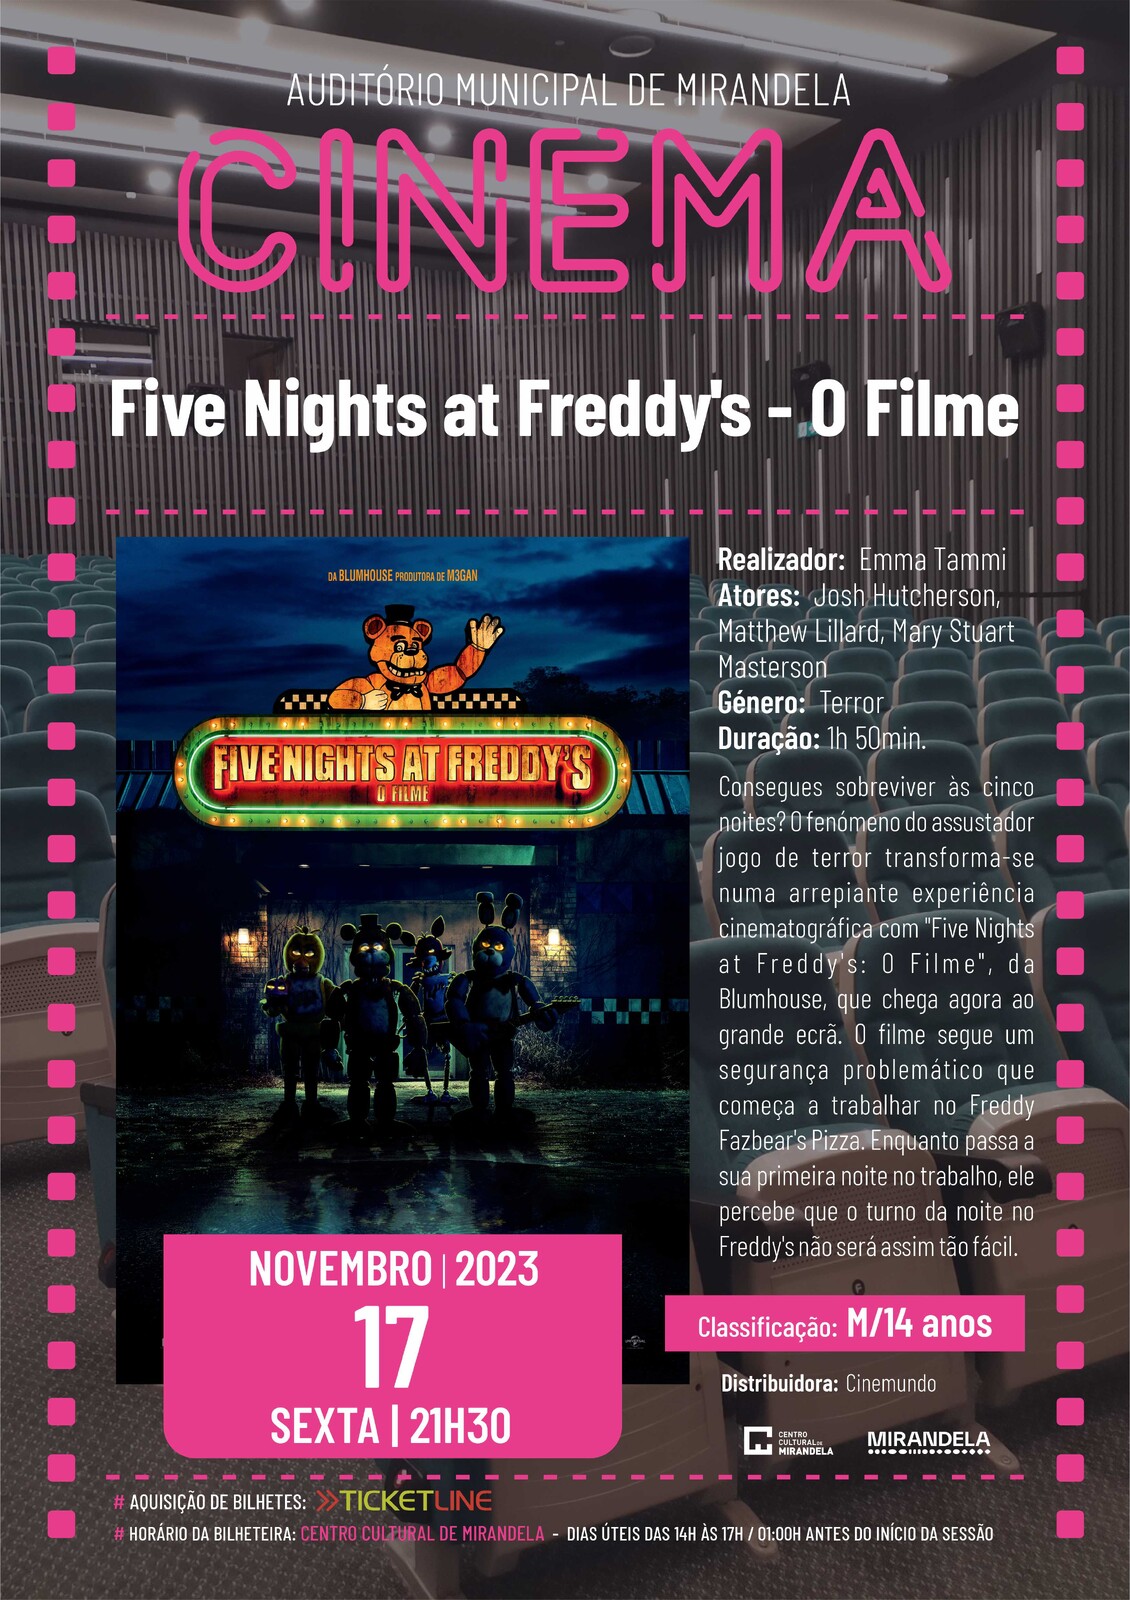 Tudo o que sabemos sobre o filme de Five Nights at Freddy's